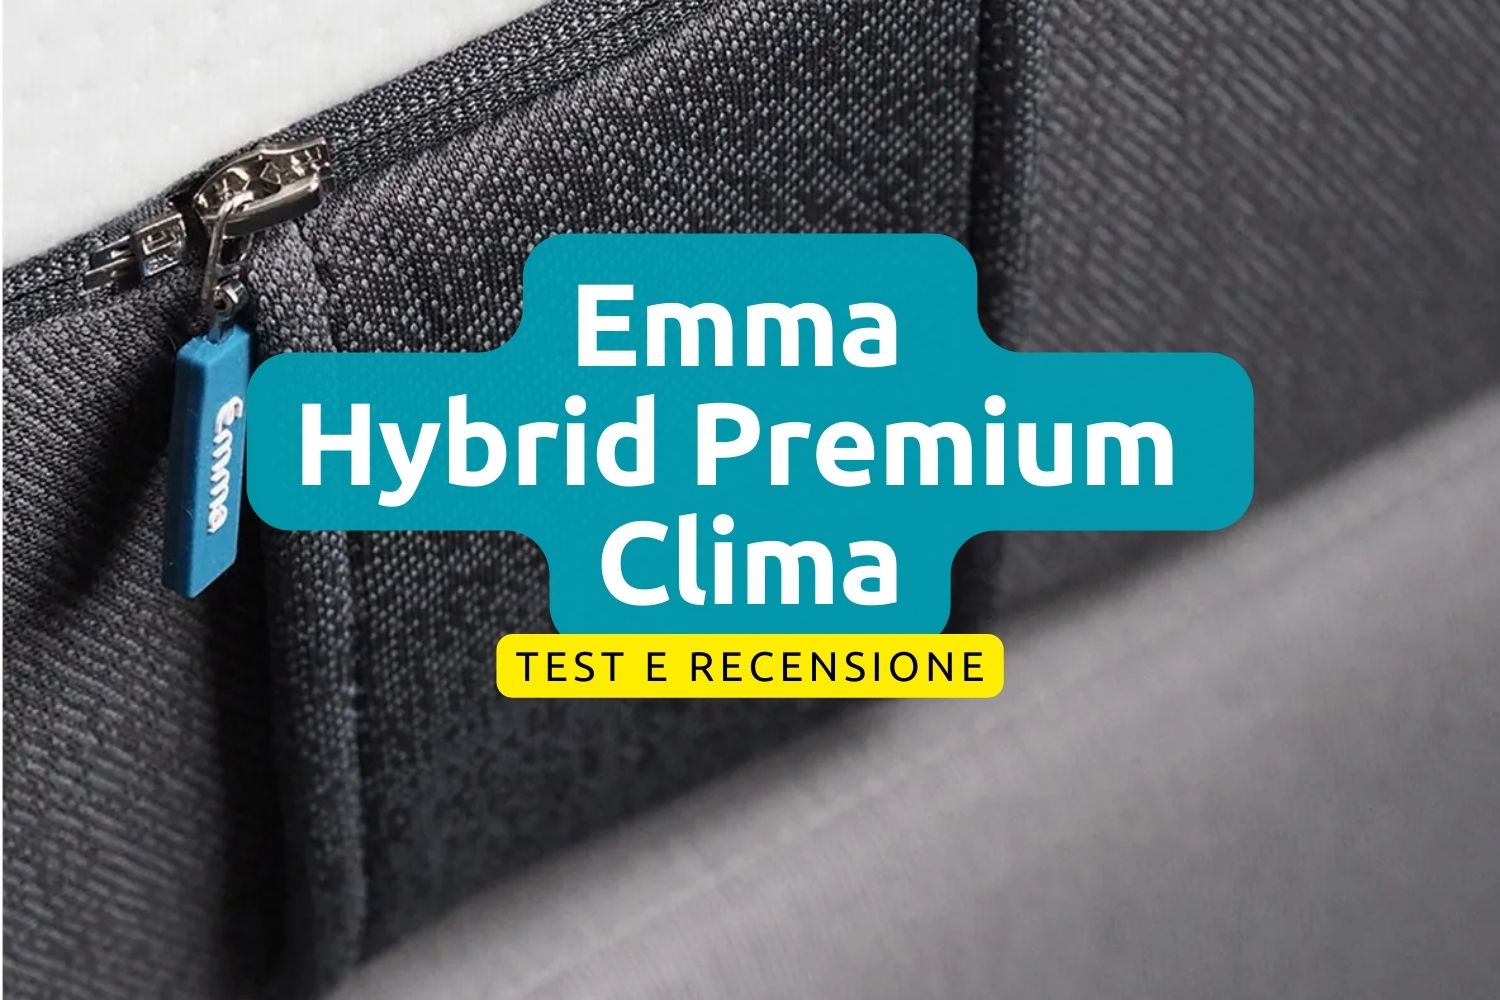 Materasso Emma Hybrid Premium Clima principale